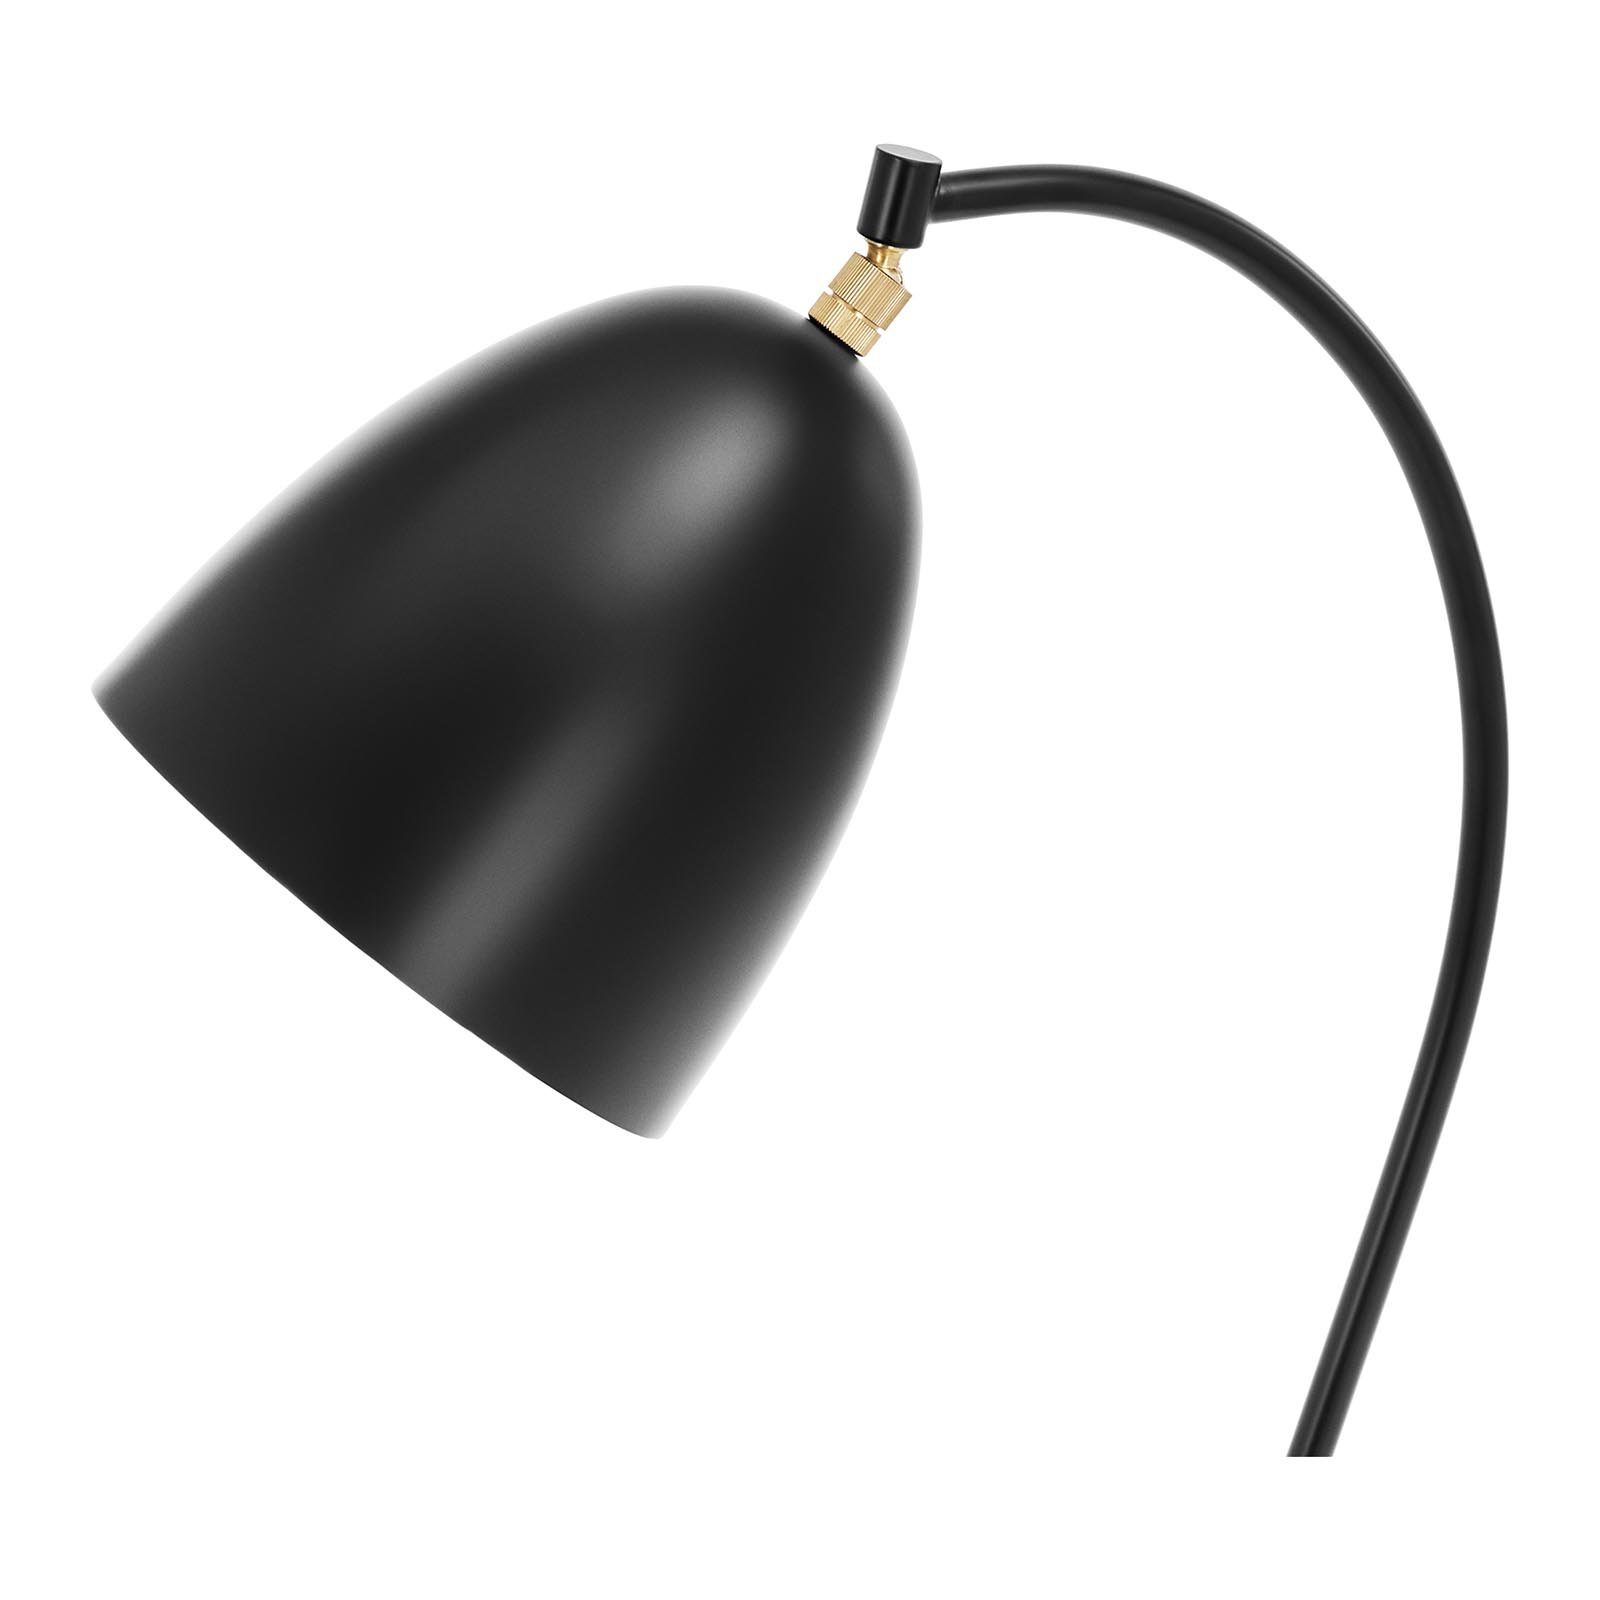 Uniprodo Stehlampe Bogenlampe Stehlampe beweglicher Schirm E27 40 Stehleuchte W